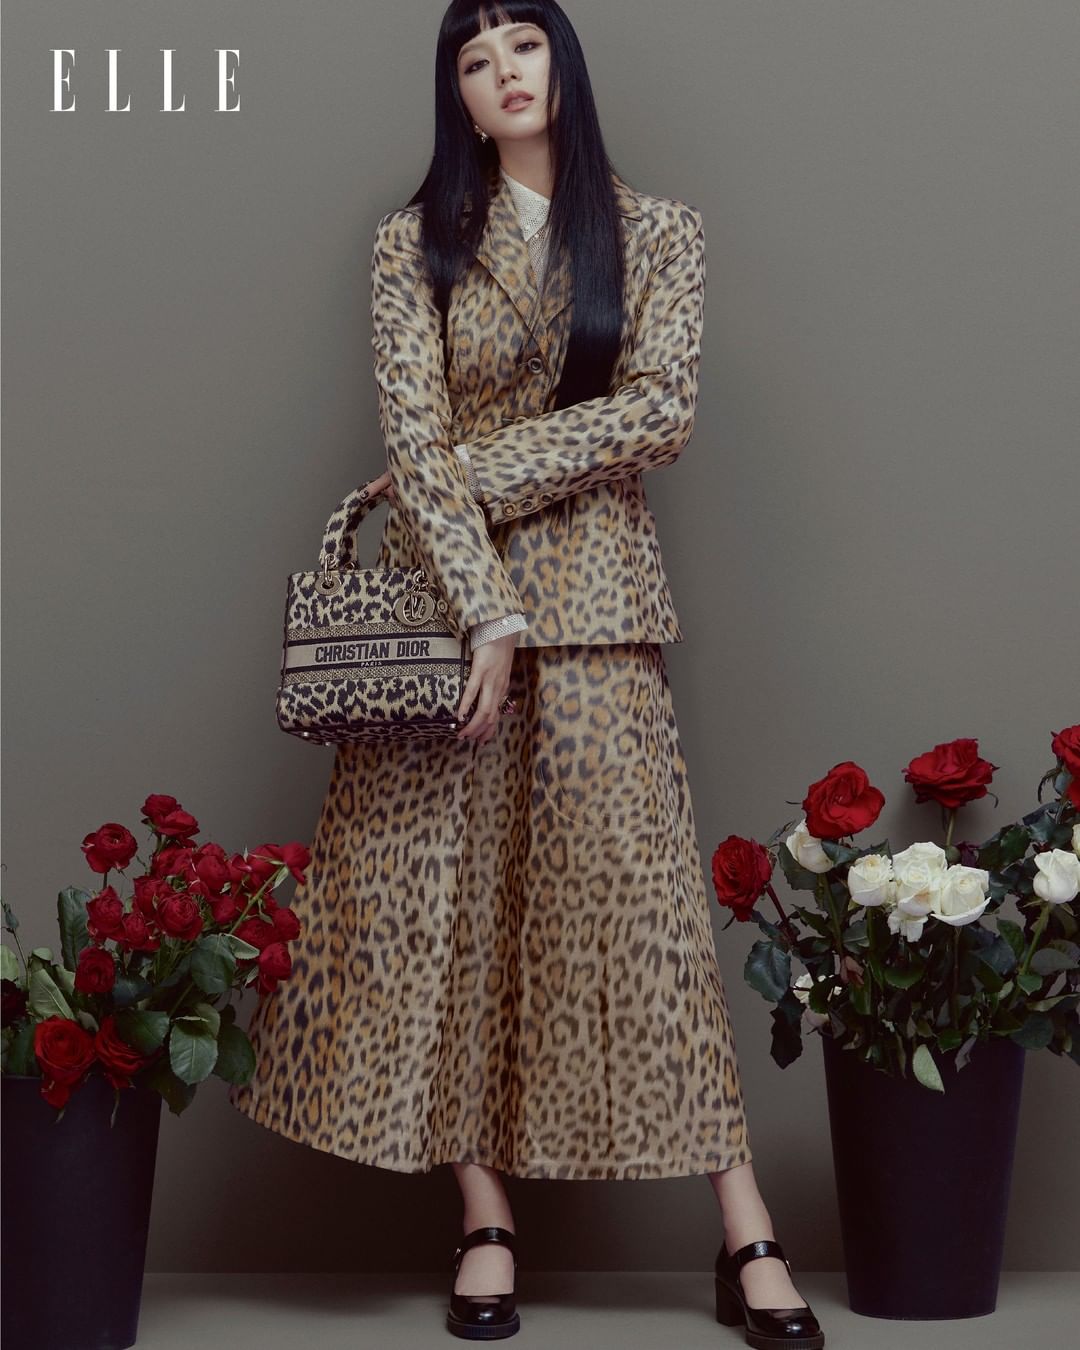 Dàn mỹ nhân Việt lên đồ Dior cực chất với trang phục lấy cảm hứng từ Jisoo  BLACKPINK